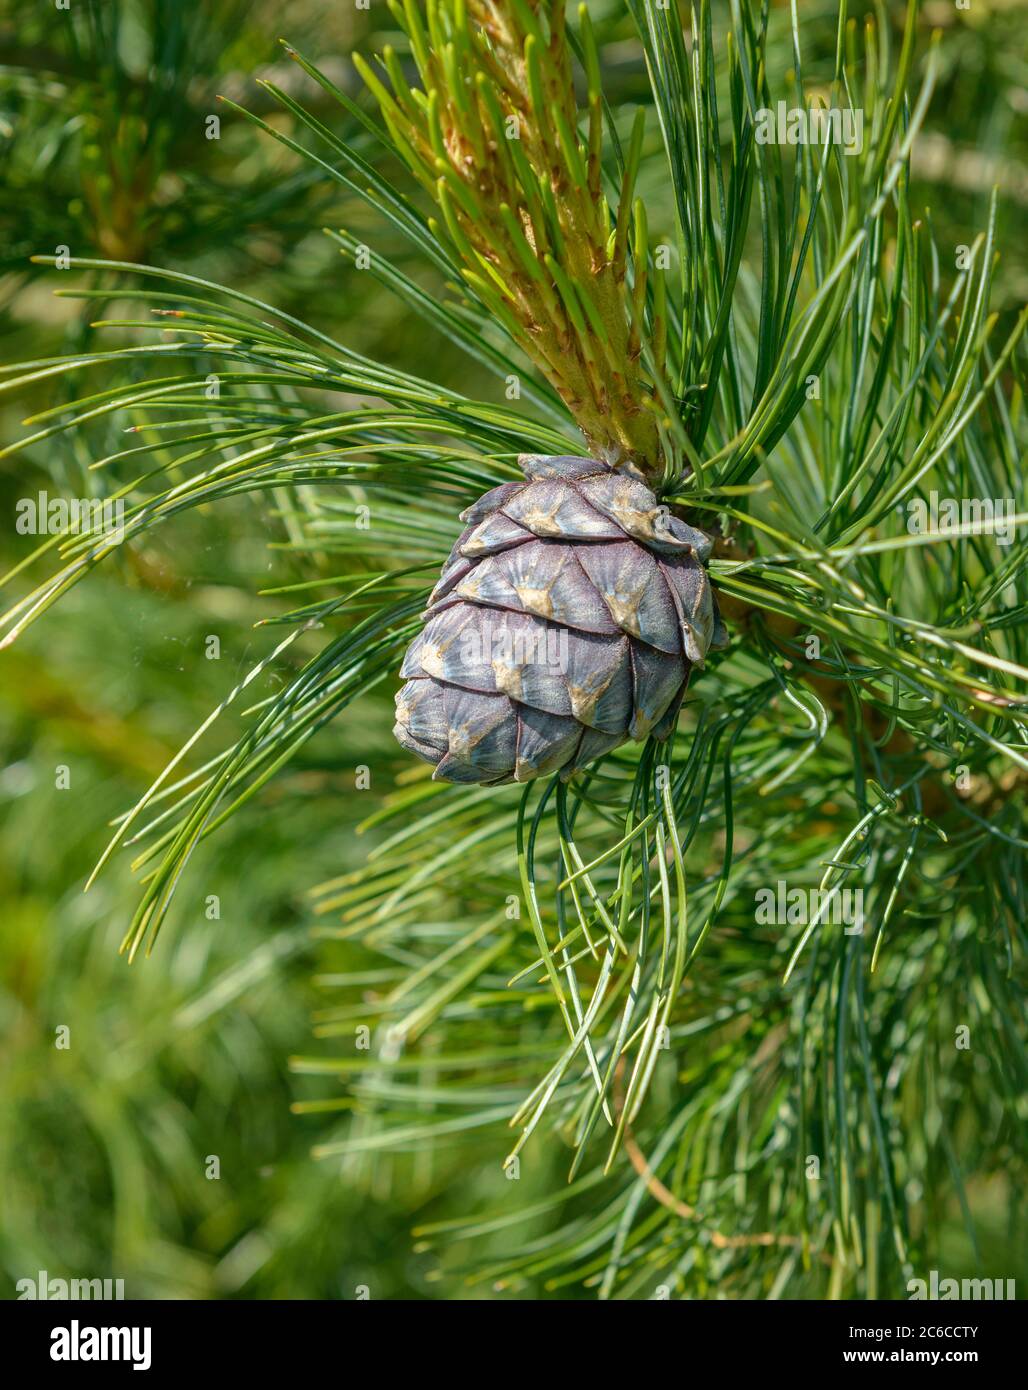 Zirbel-Kiefer, Pinus cembra, Pineal pine, Pinus cembra Stock Photo